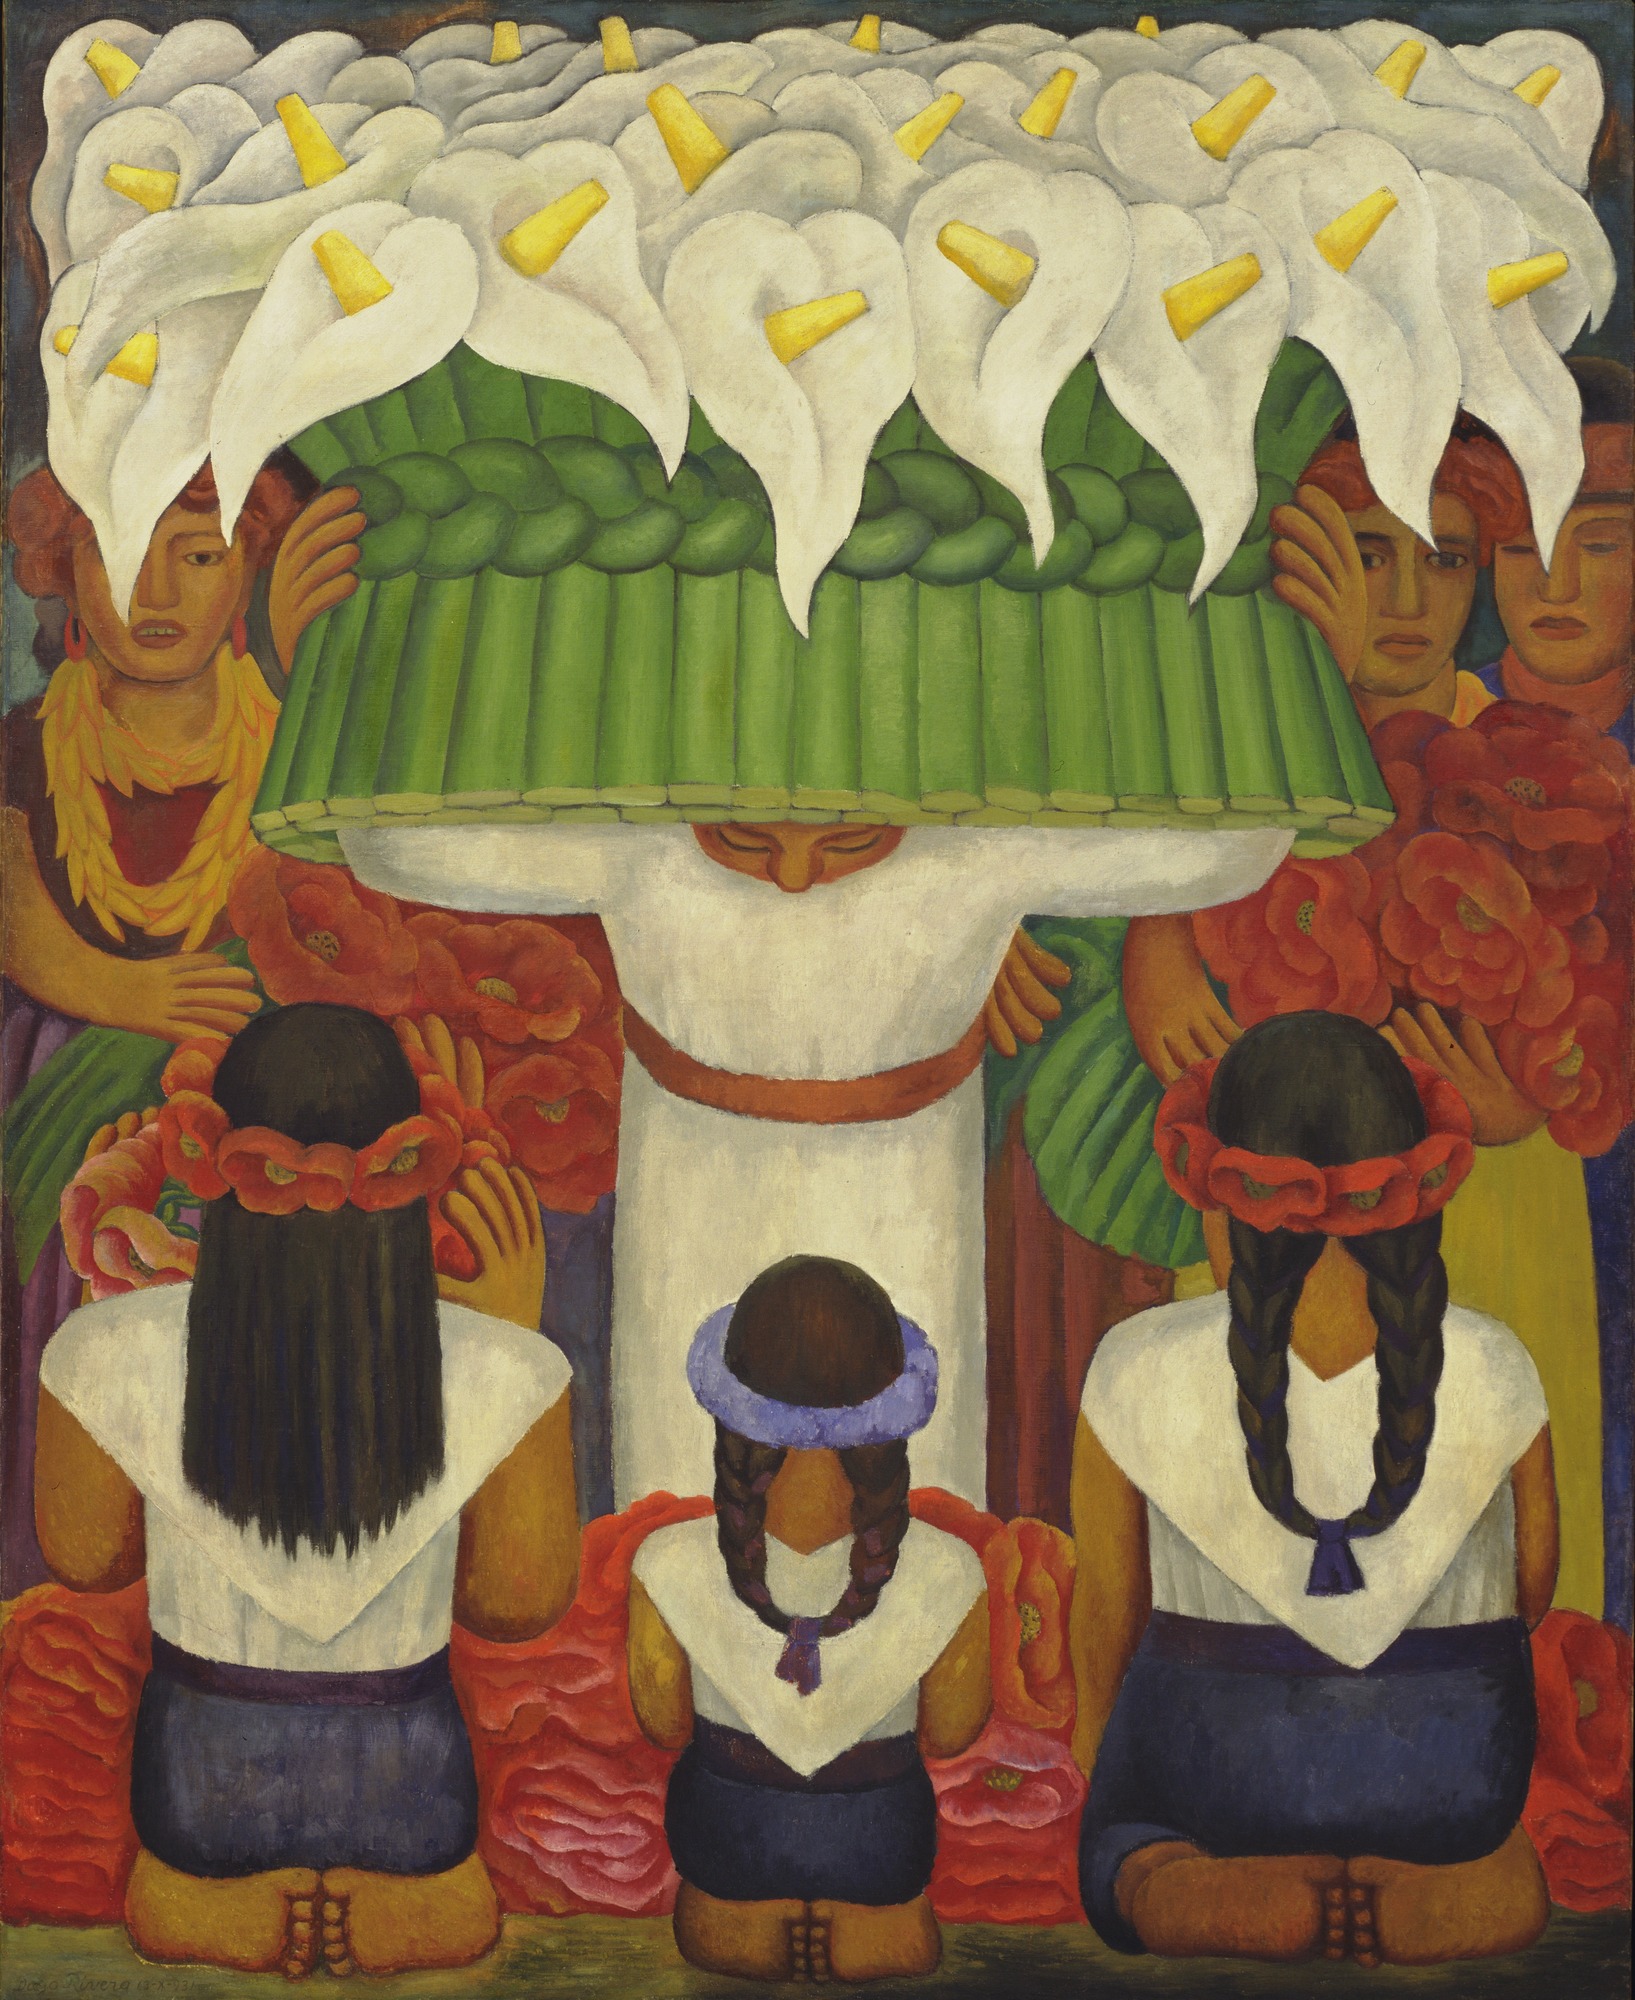 Festiwal kwiatów: dzień św. Anity by Diego Rivera - 1931 - 199.3 x 162.5 cm 